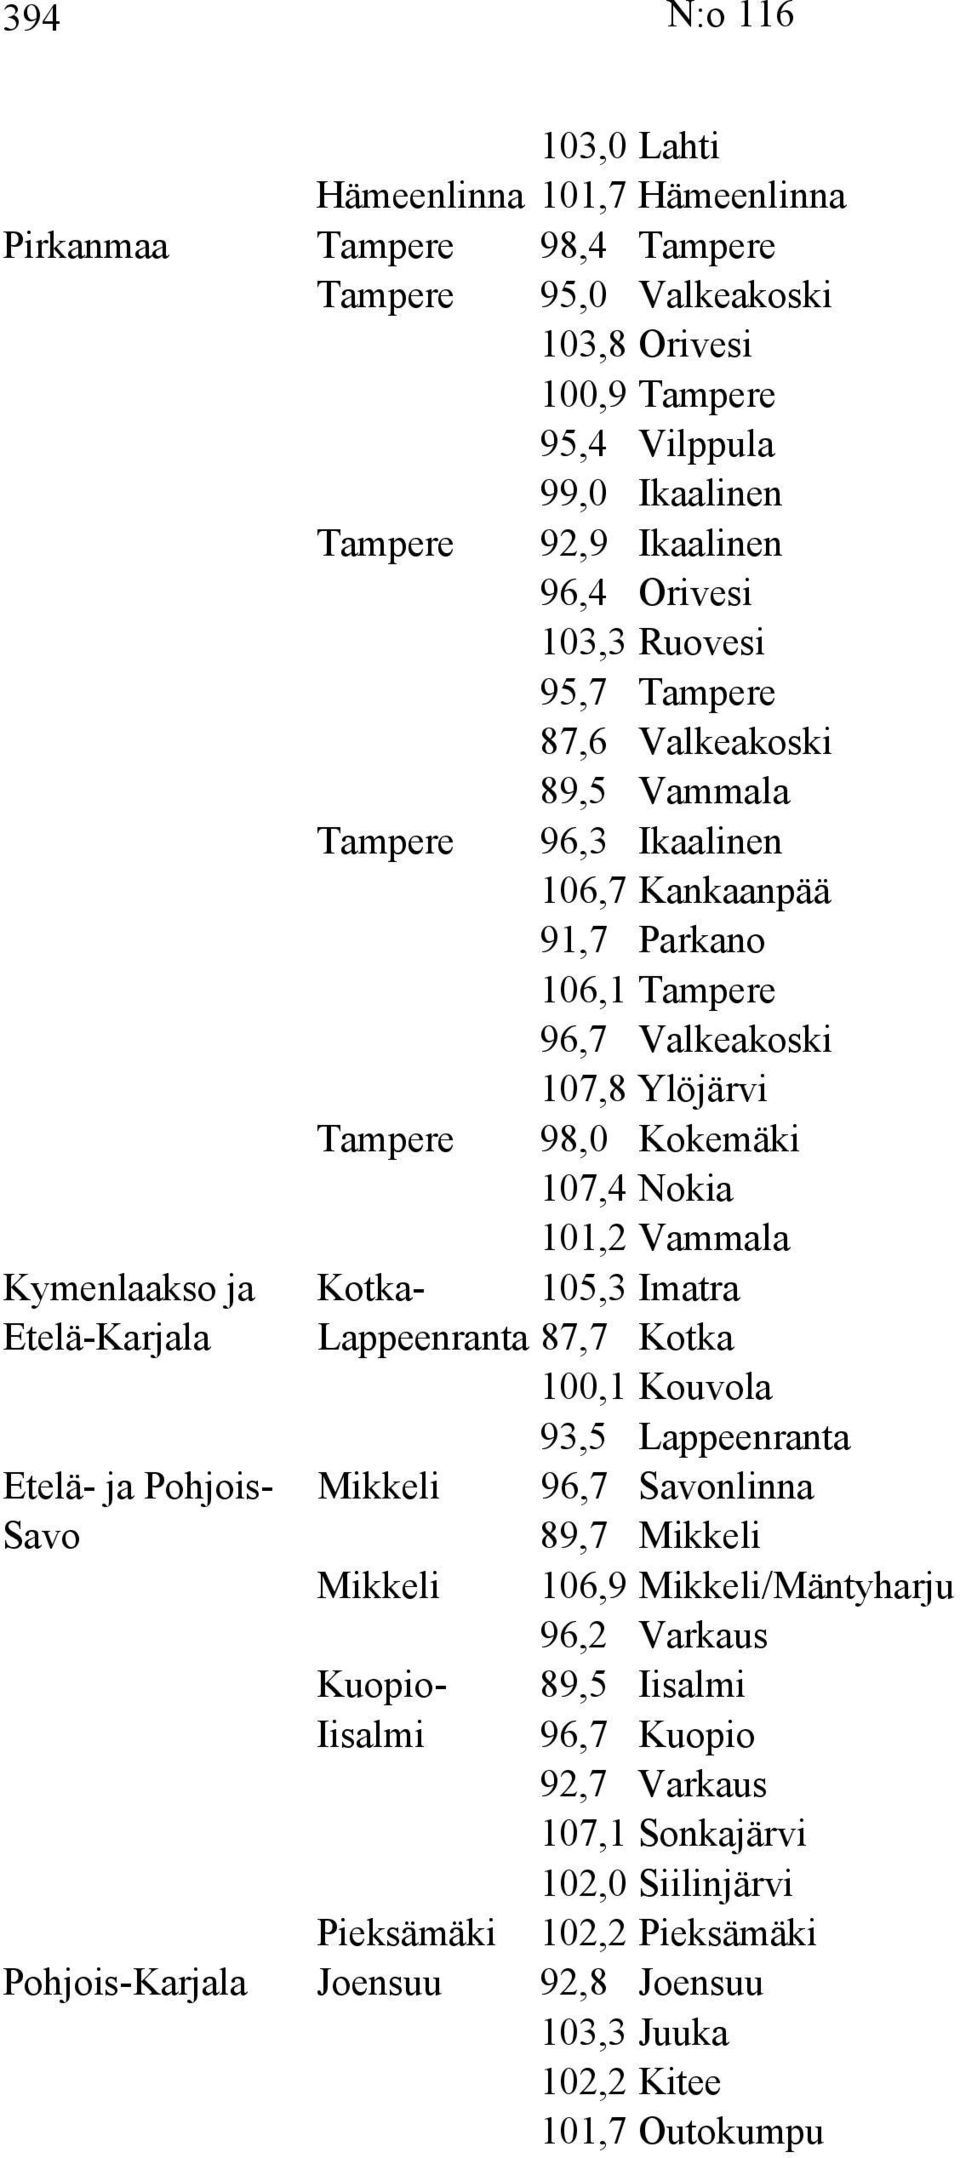 Vammala Kymenlaakso ja Kotka- 105,3 Imatra Etelä-Karjala Lappeenranta 87,7 Kotka 100,1 Kouvola 93,5 Lappeenranta Etelä- ja Pohjois- Mikkeli 96,7 Savonlinna Savo 89,7 Mikkeli Mikkeli 106,9